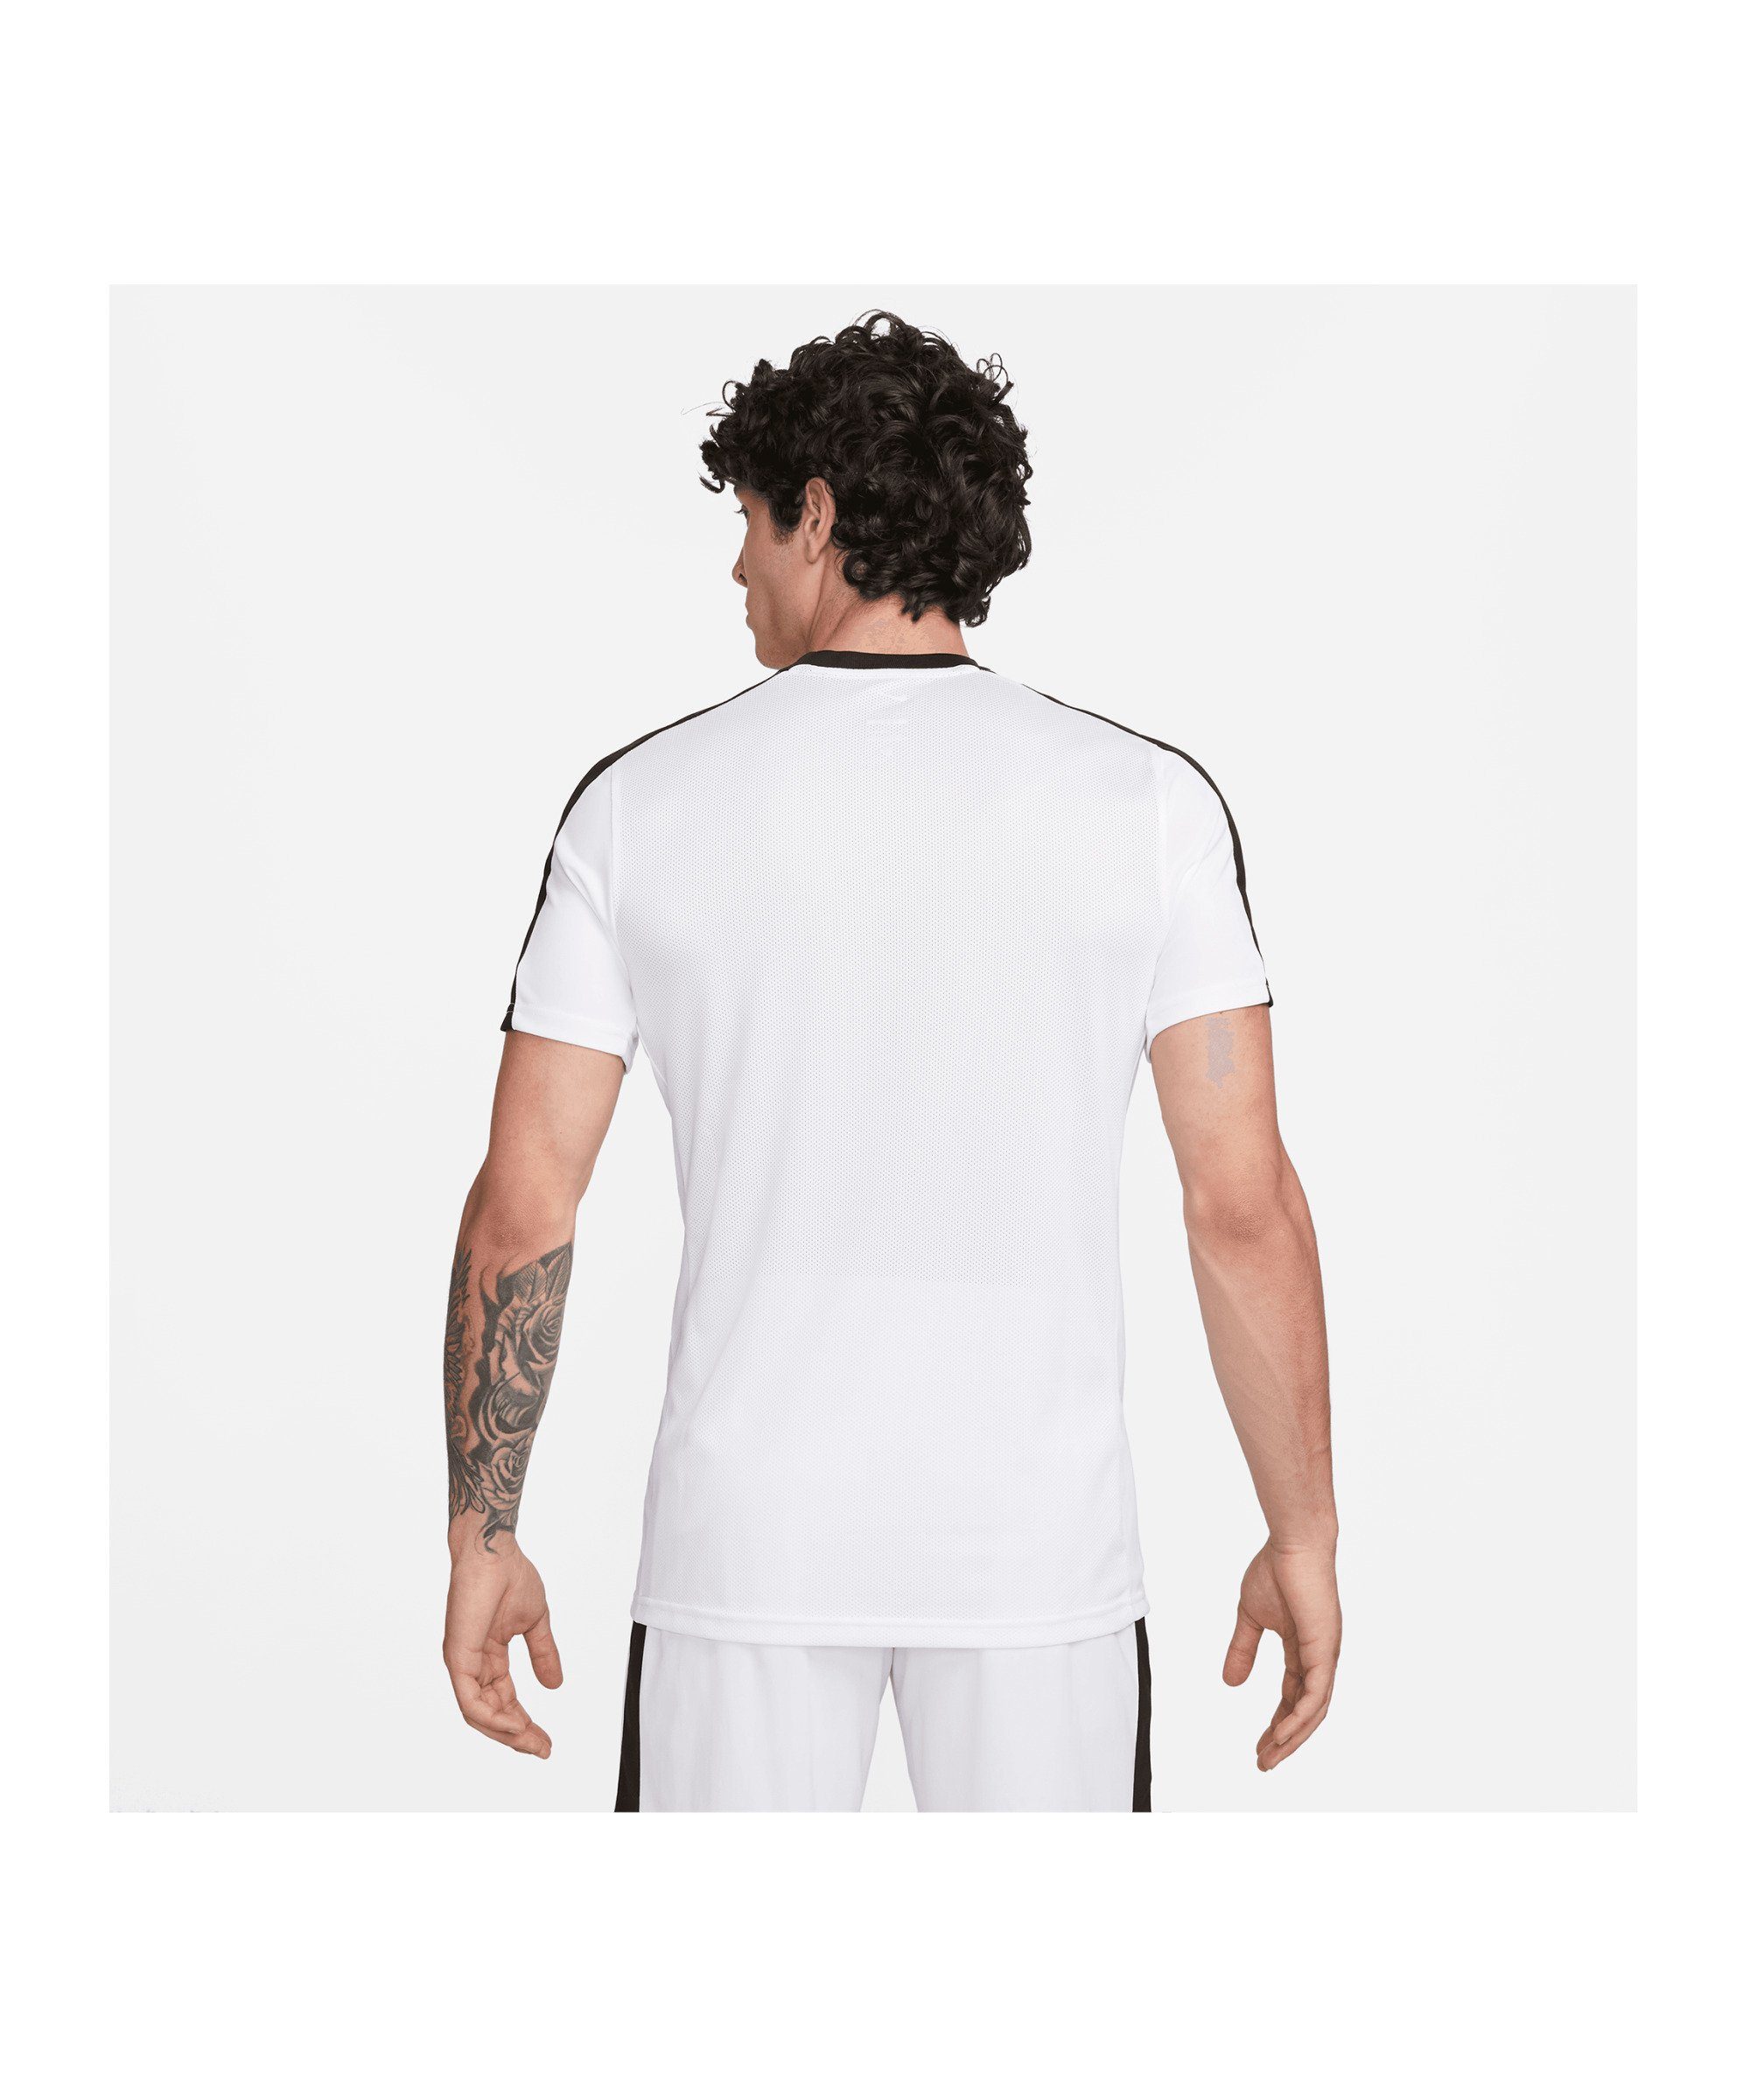 Nike T-Shirt Academy Trainingsshirt default weissschwarzrot